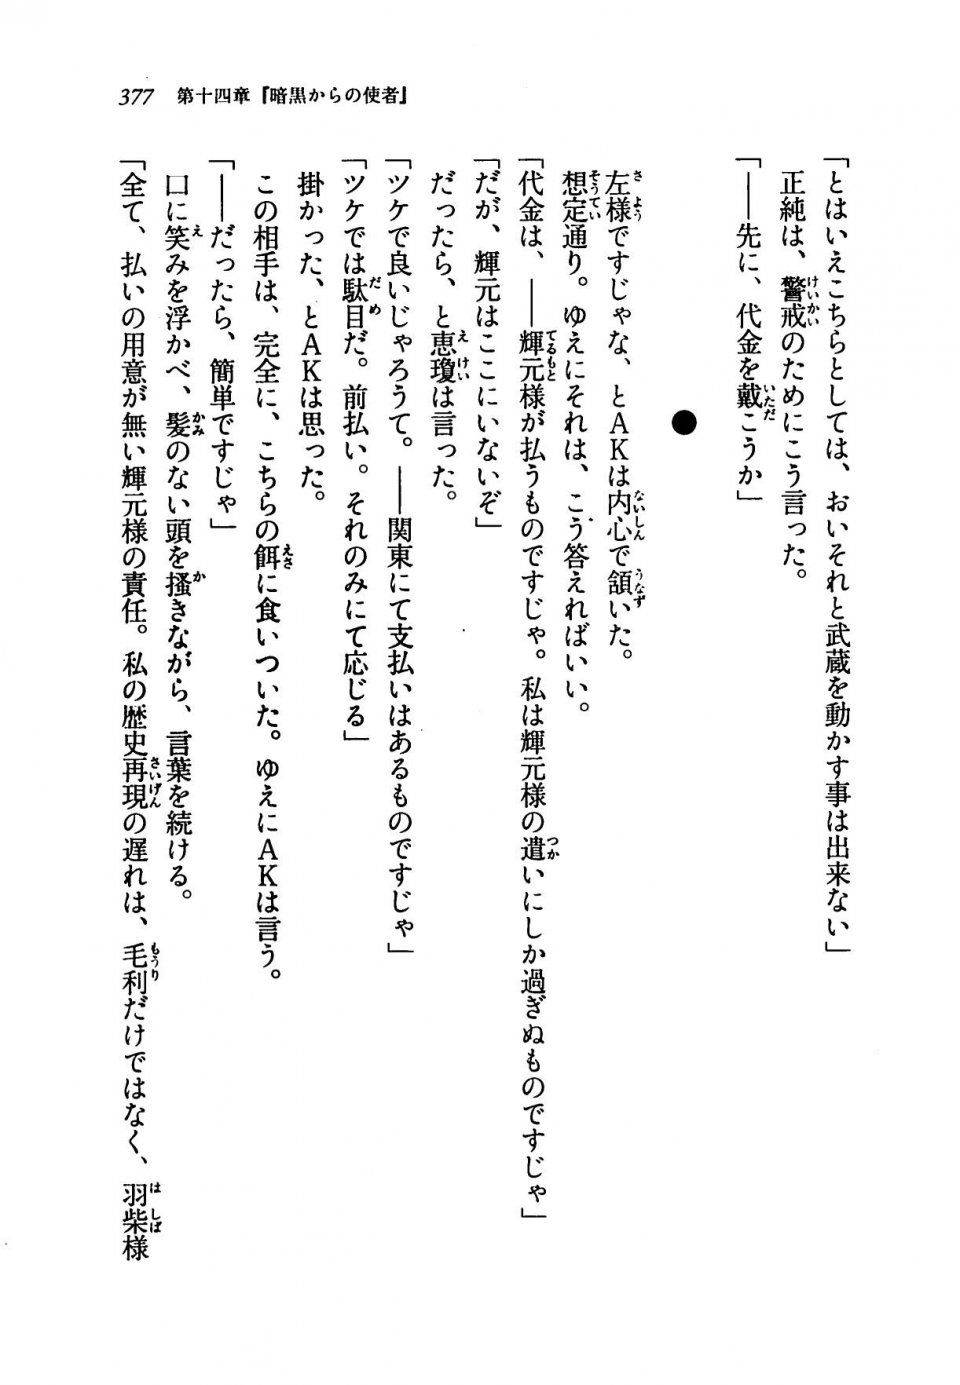 Kyoukai Senjou no Horizon LN Vol 19(8A) - Photo #377